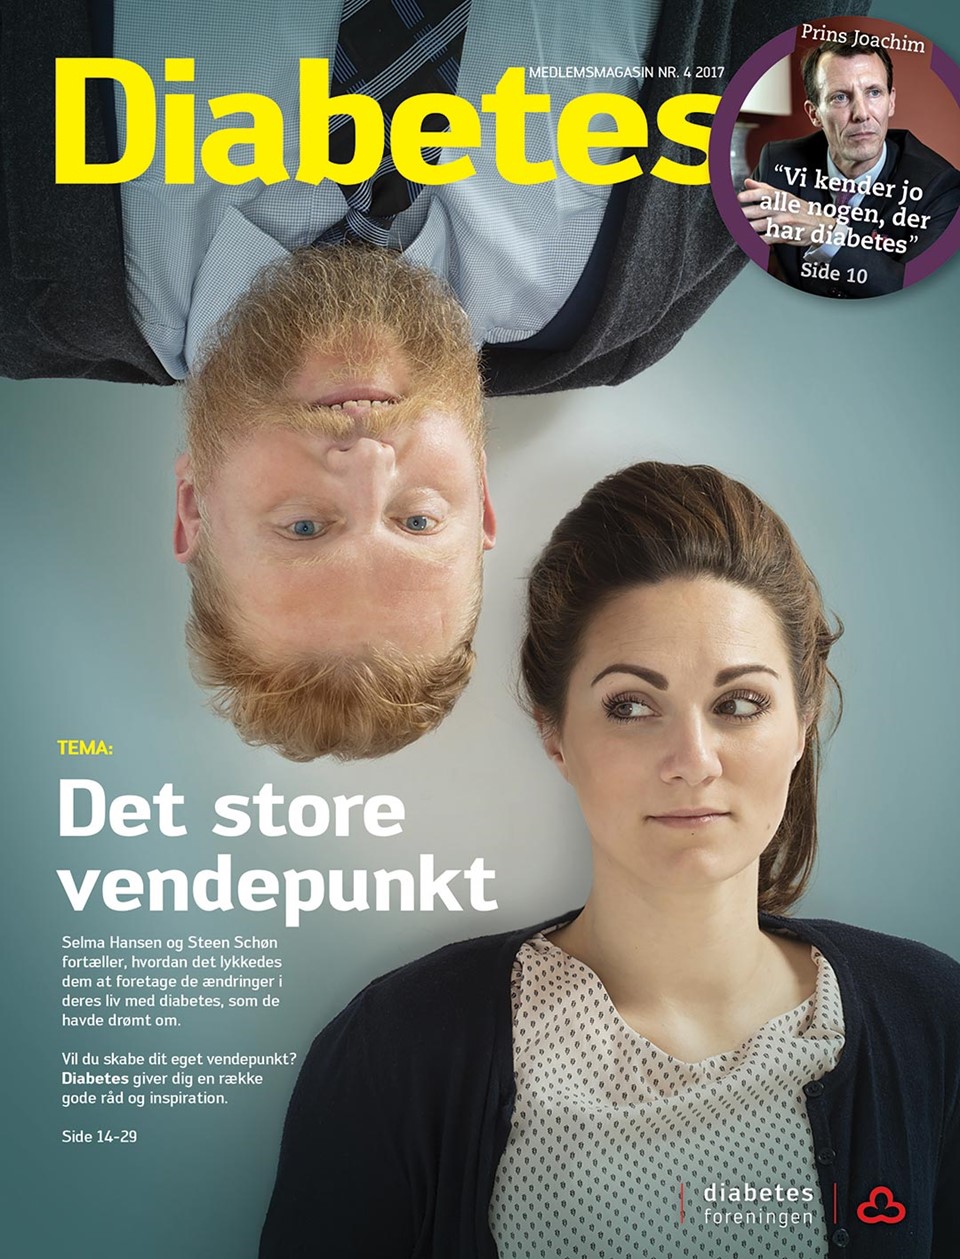  Forside af magasinet Diabetes november 2017